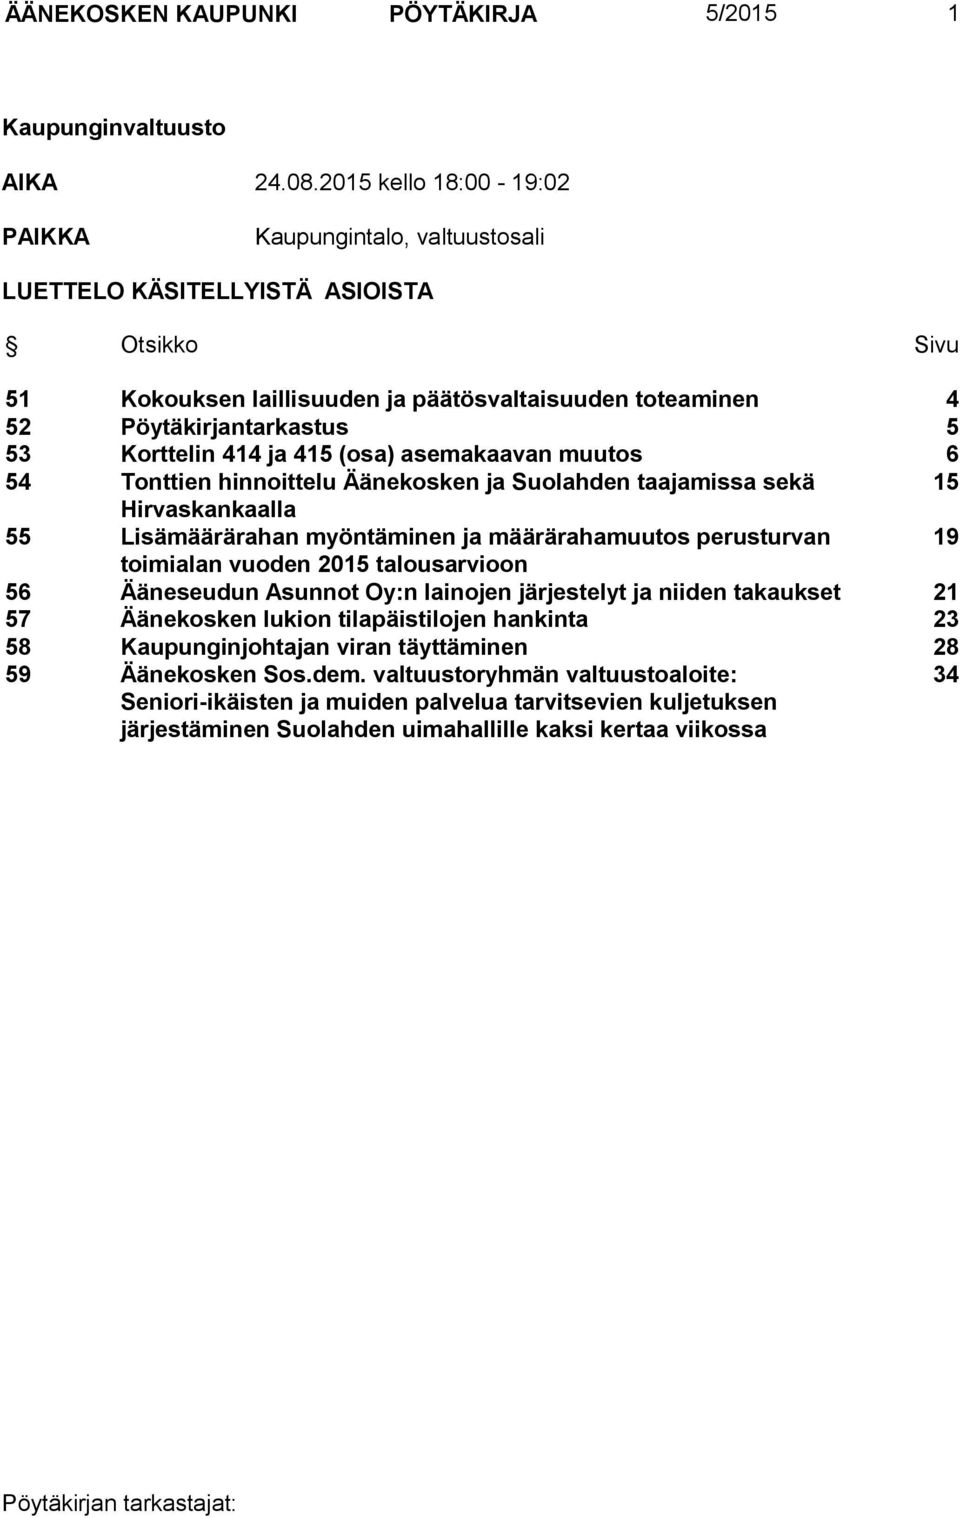 Korttelin 414 ja 415 (osa) asemakaavan muutos 6 54 Tonttien hinnoittelu Äänekosken ja Suolahden taajamissa sekä 15 Hirvaskankaalla 55 Lisämäärärahan myöntäminen ja määrärahamuutos perusturvan 19